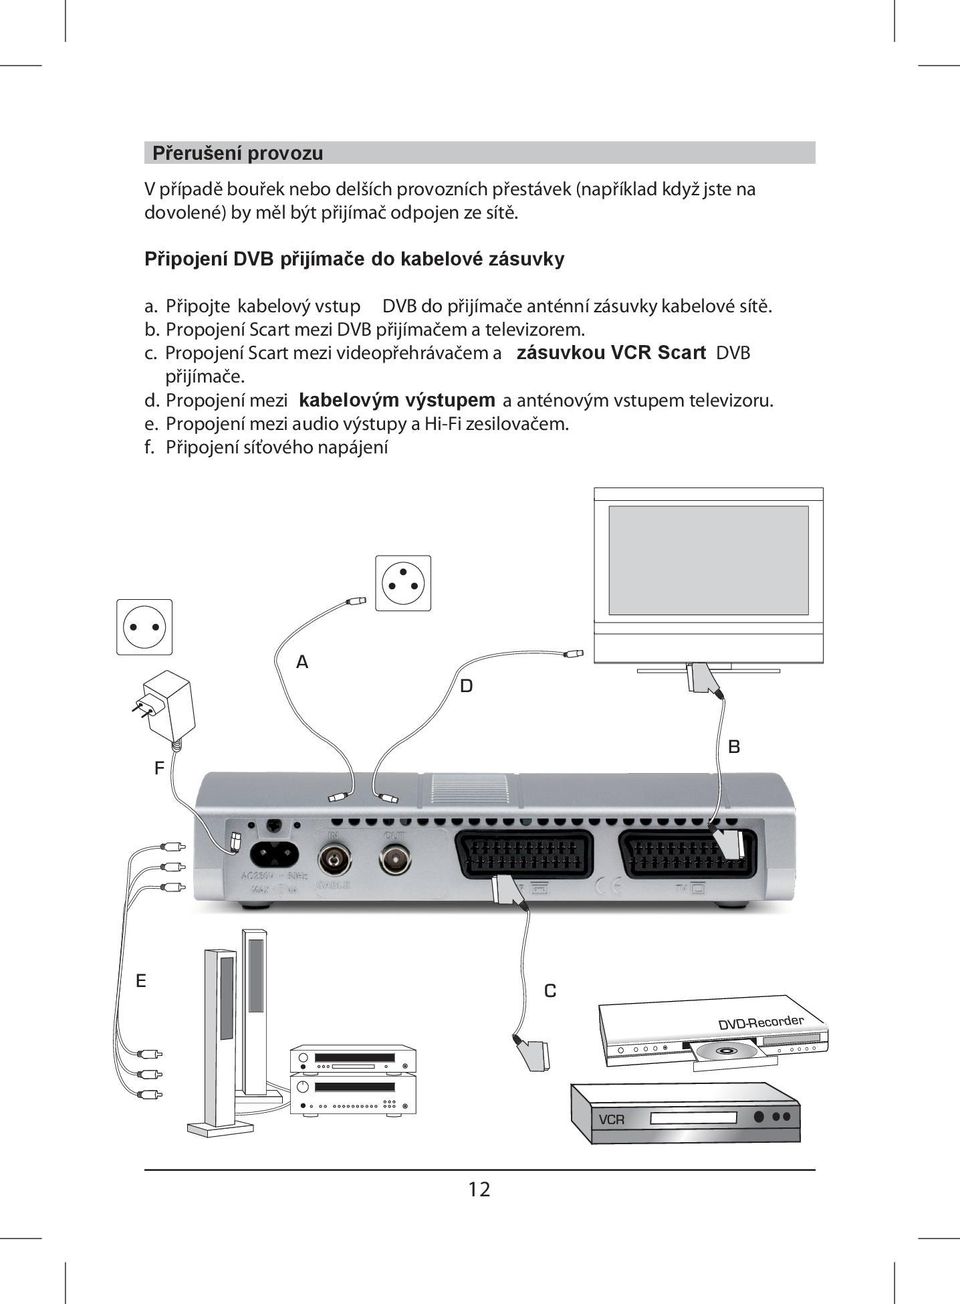 Propojení Scart mezi DVB přijímačem a televizorem. c. Propojení Scart mezi videopřehrávačem a zásuvkou VCR Scart DVB přijímače. d.